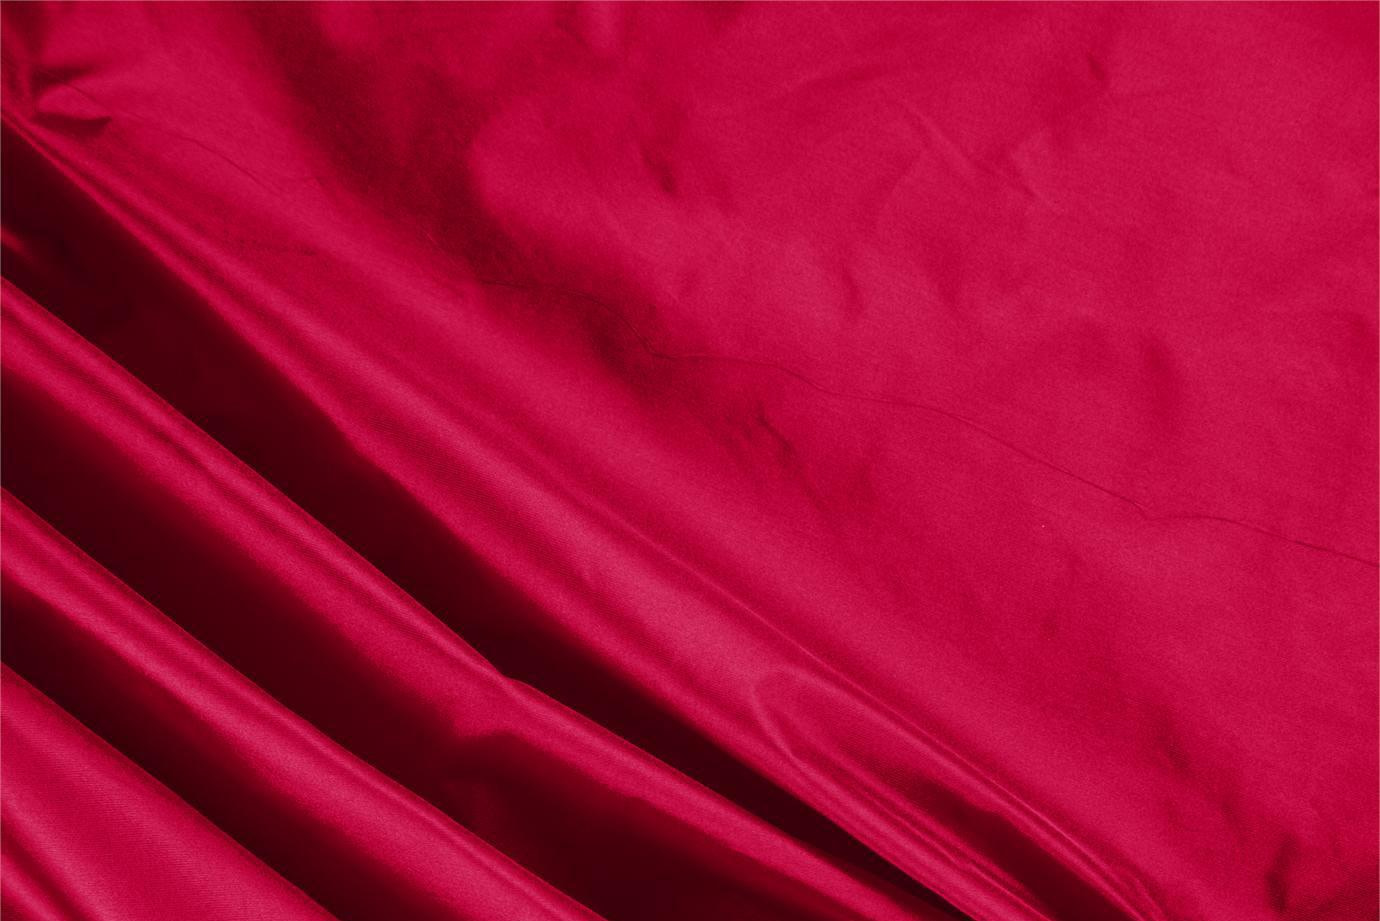 Tessuto Taffetà Rosso Rubino in Seta per Abbigliamento UN000246